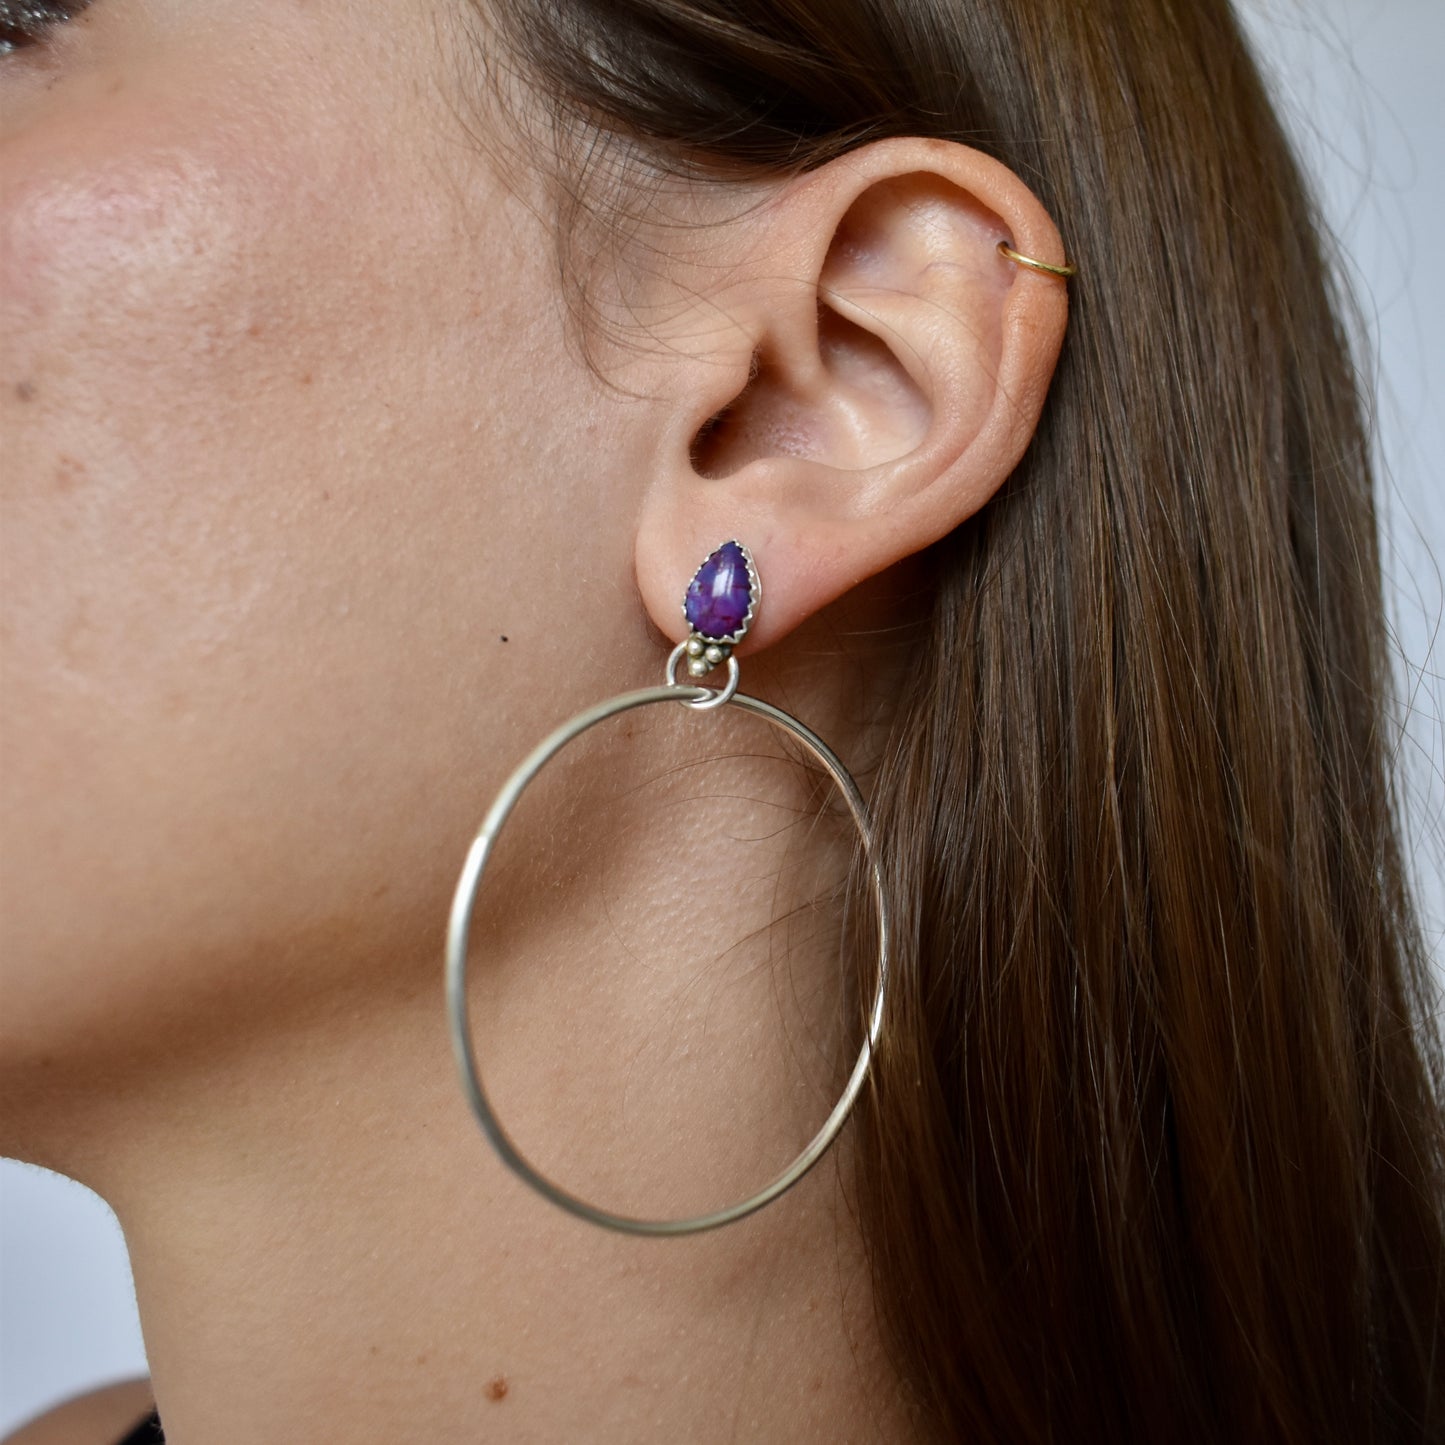 bespoke gemstone silver hoop earrings